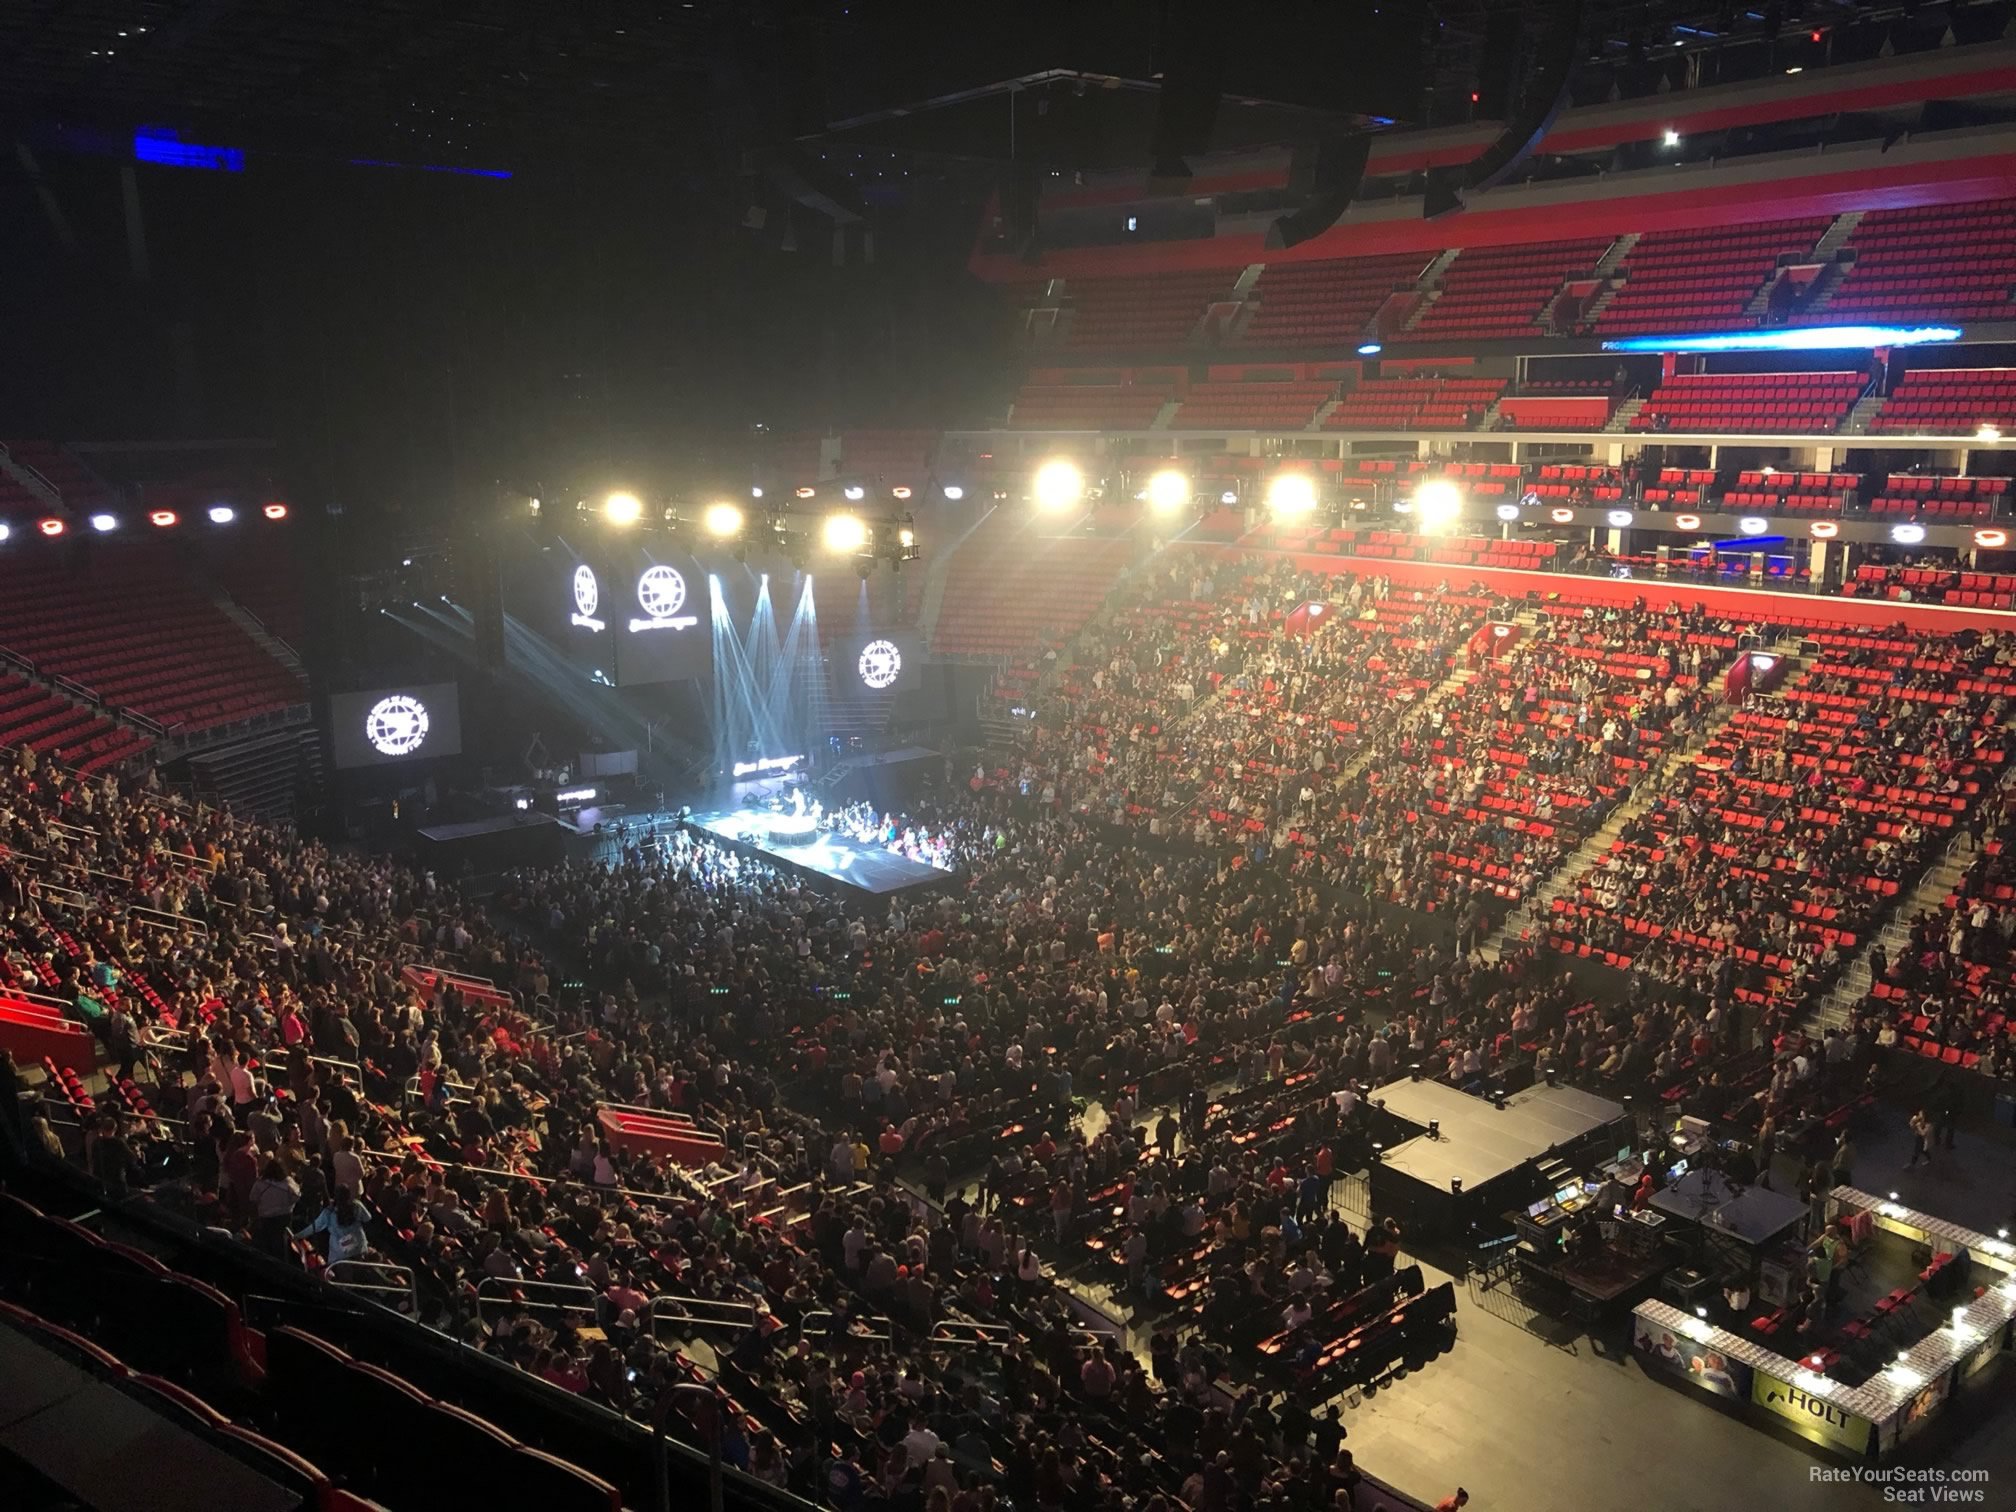 Little Caesars Arena Mezzanine 23 Concert Seating - RateYourSeats.com